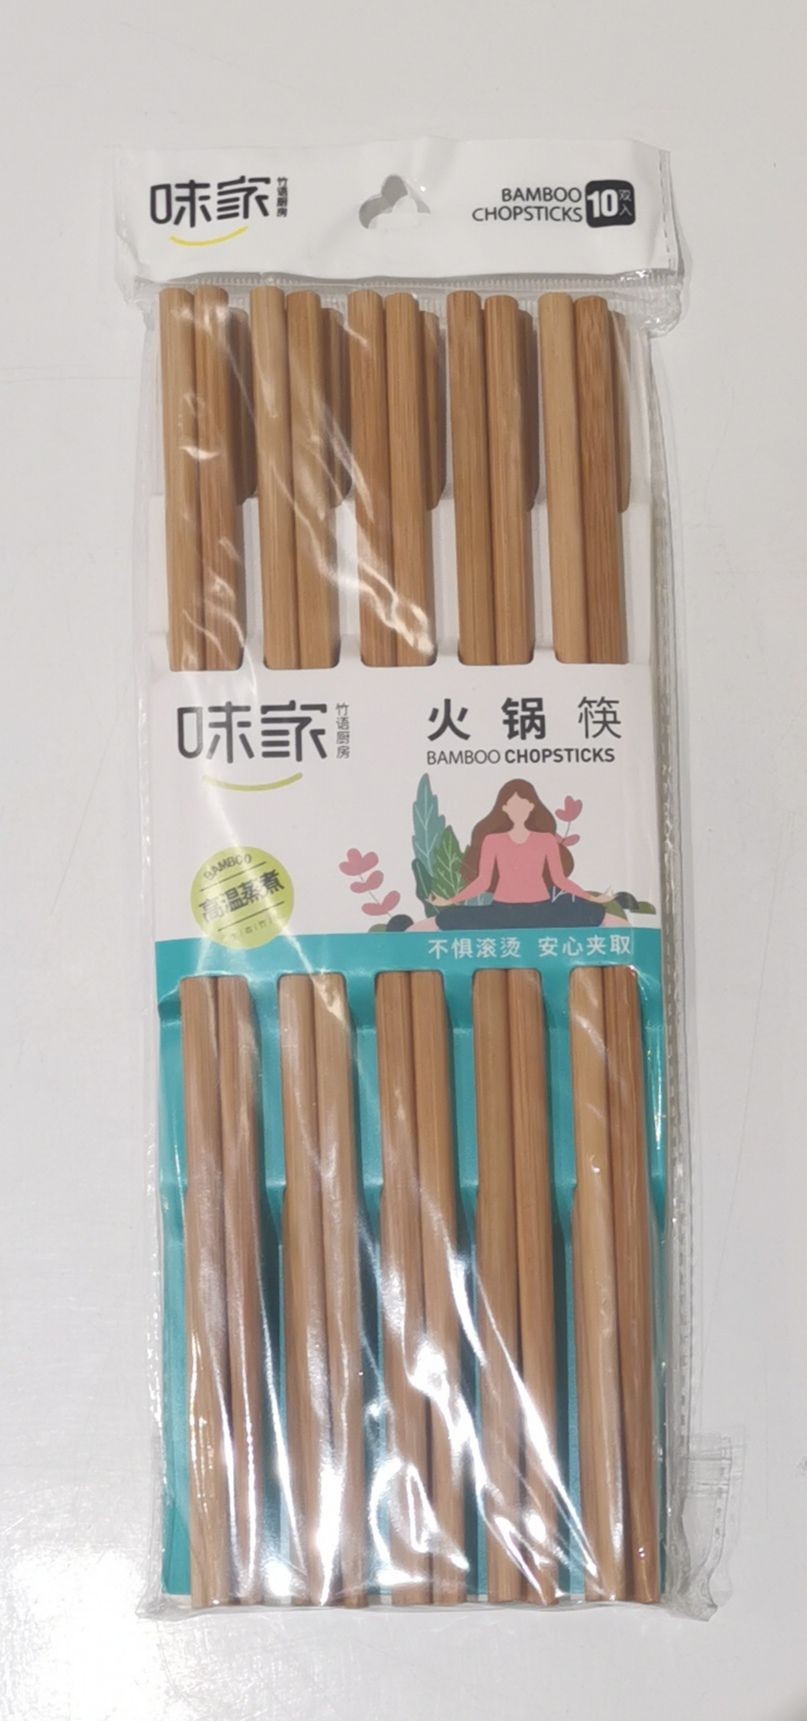 bamboo-chopsticks-for-hot-pot